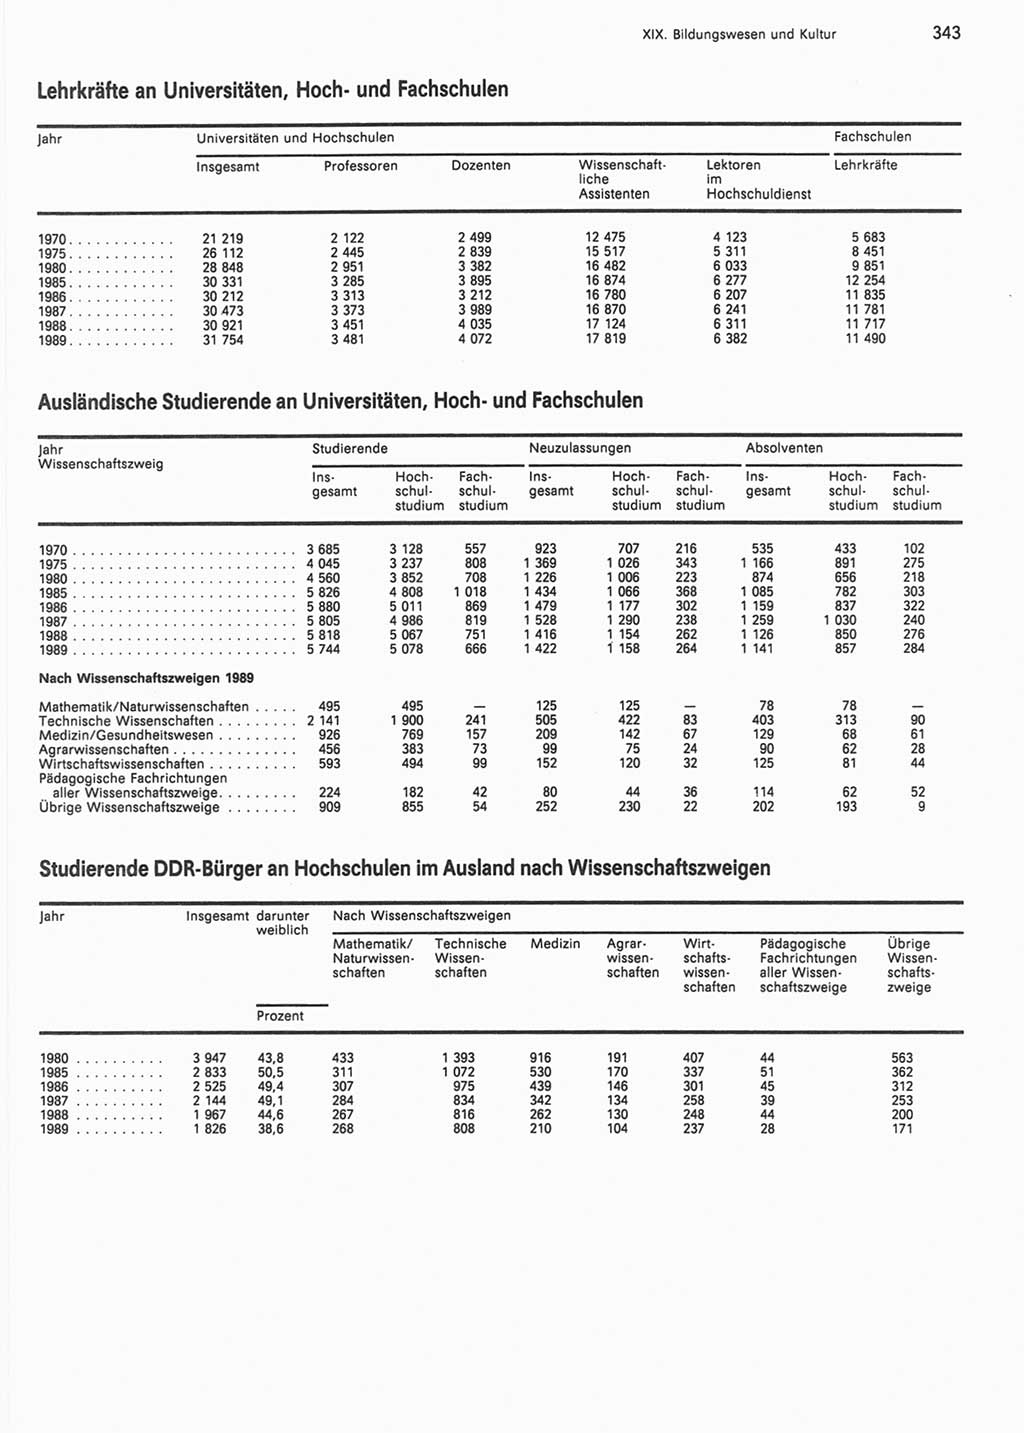 Statistisches Jahrbuch der Deutschen Demokratischen Republik (DDR) 1990, Seite 343 (Stat. Jb. DDR 1990, S. 343)